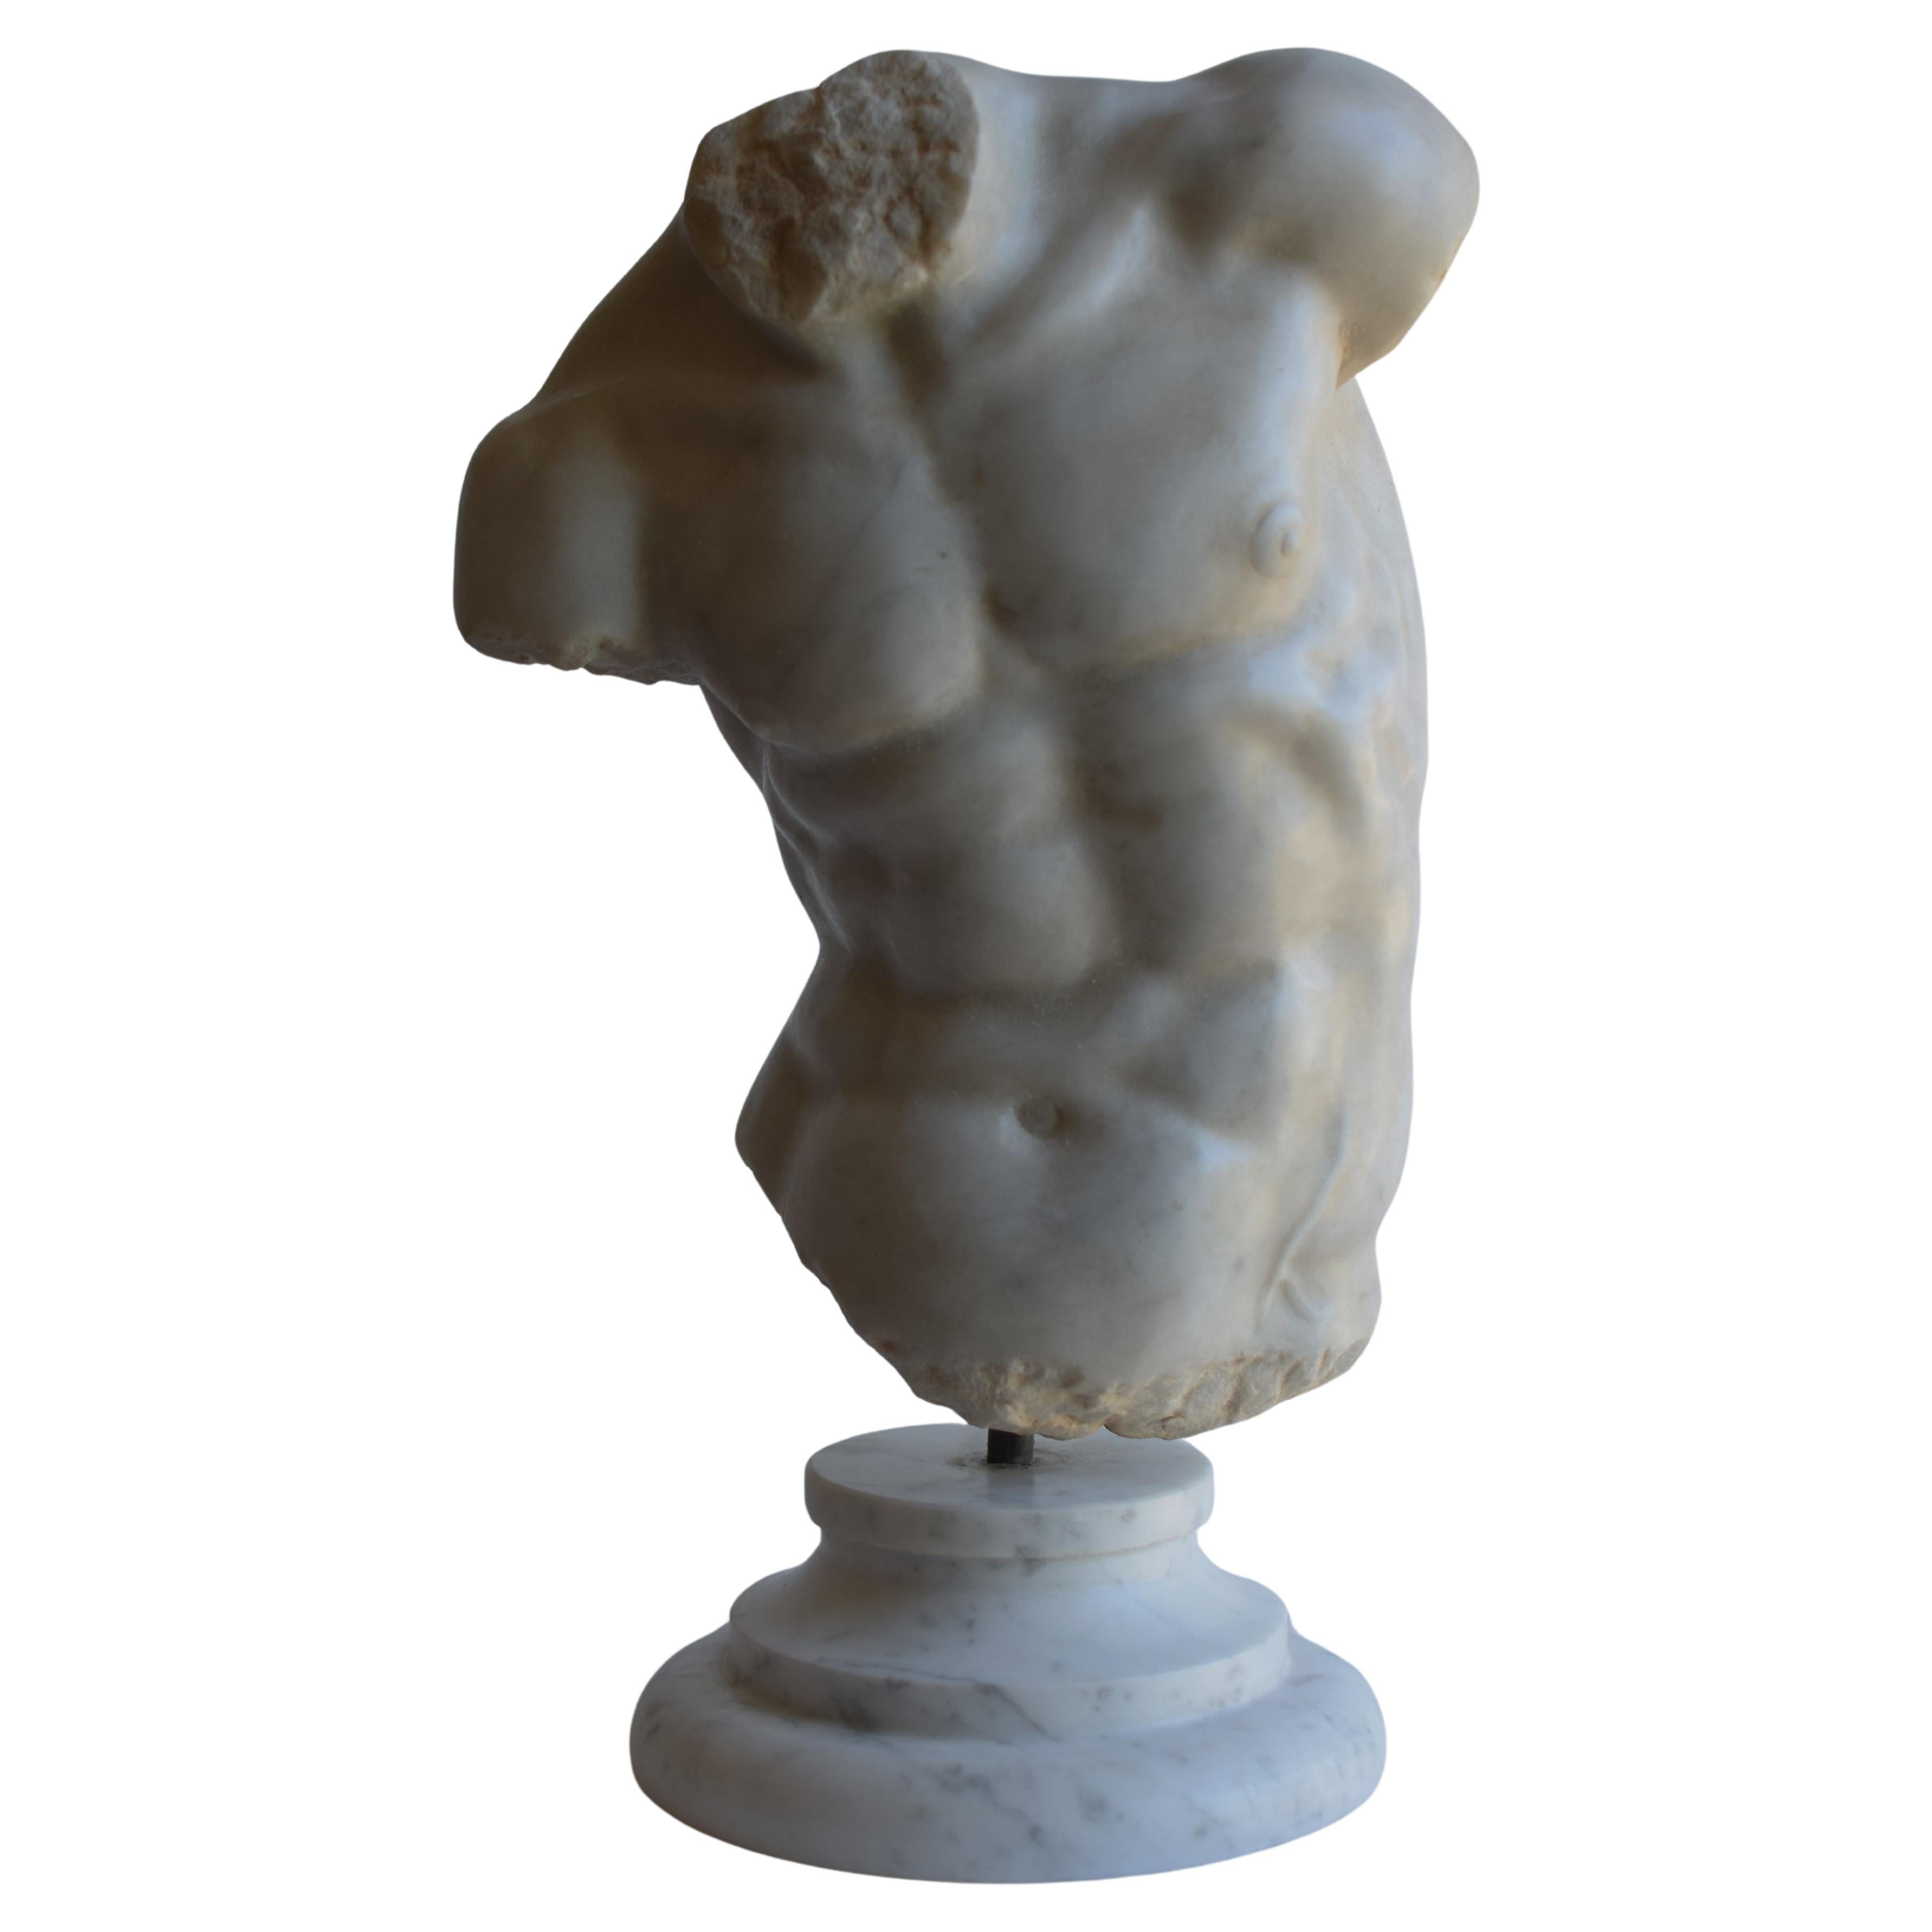 Torse masculin - "Torso Gaddi" sculpté sur marbre blanc de Carrare